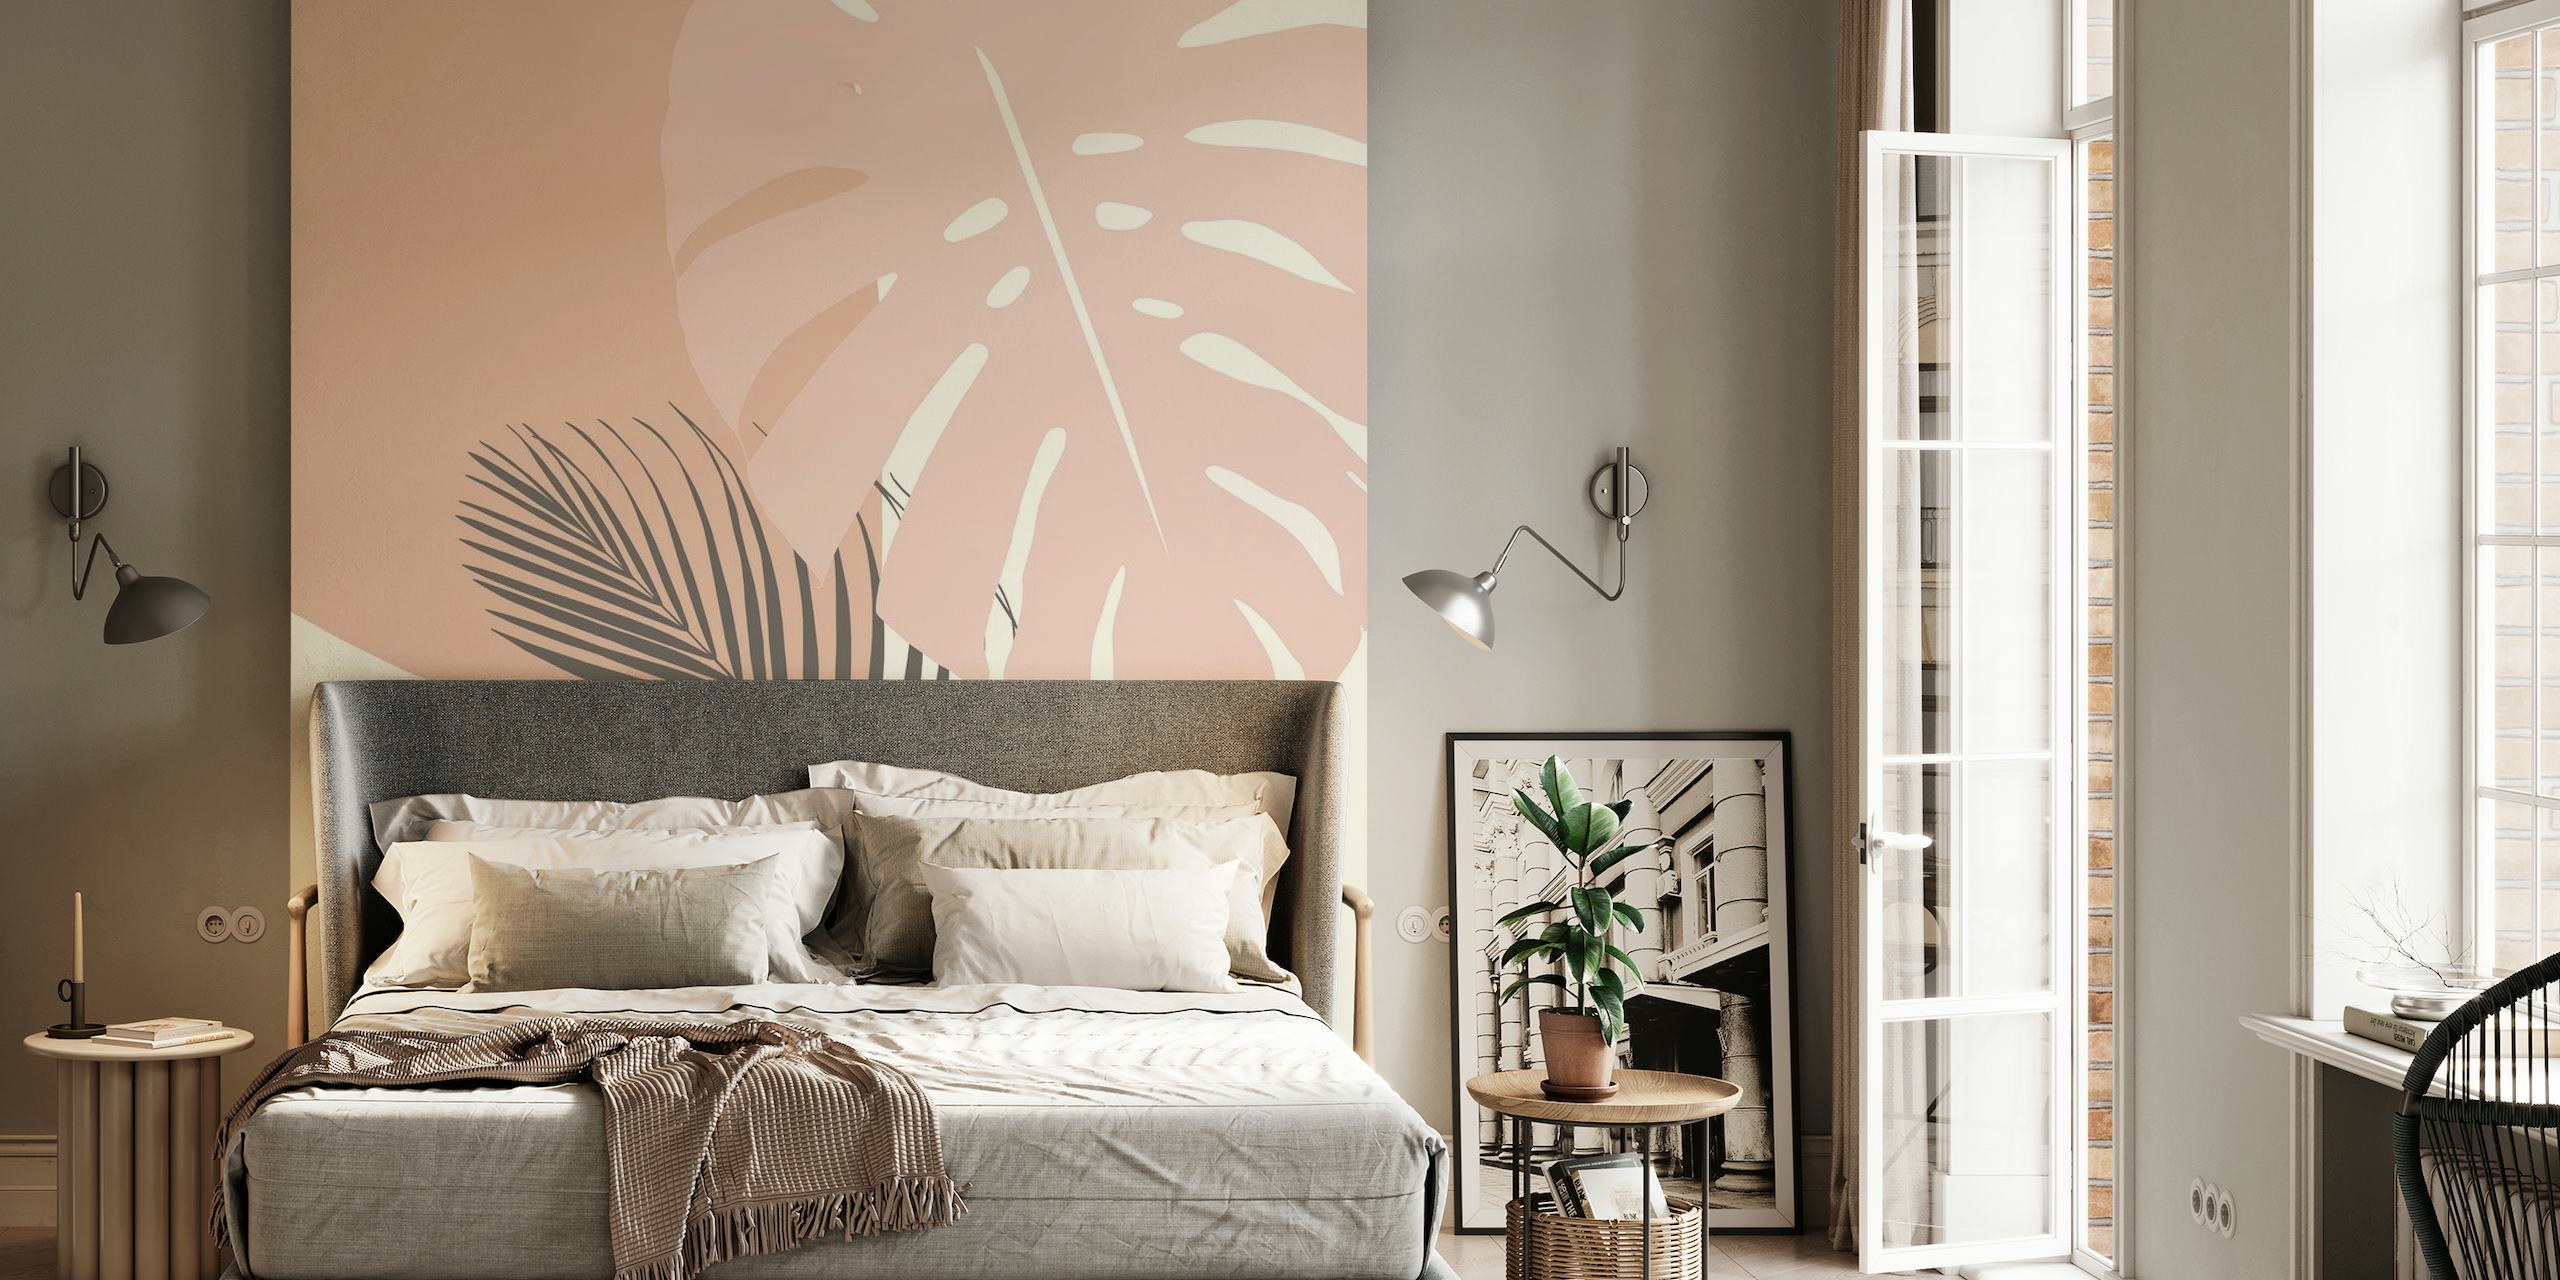 Stiliseret monstera og palmeblad vægmaleri i bløde jordfarver